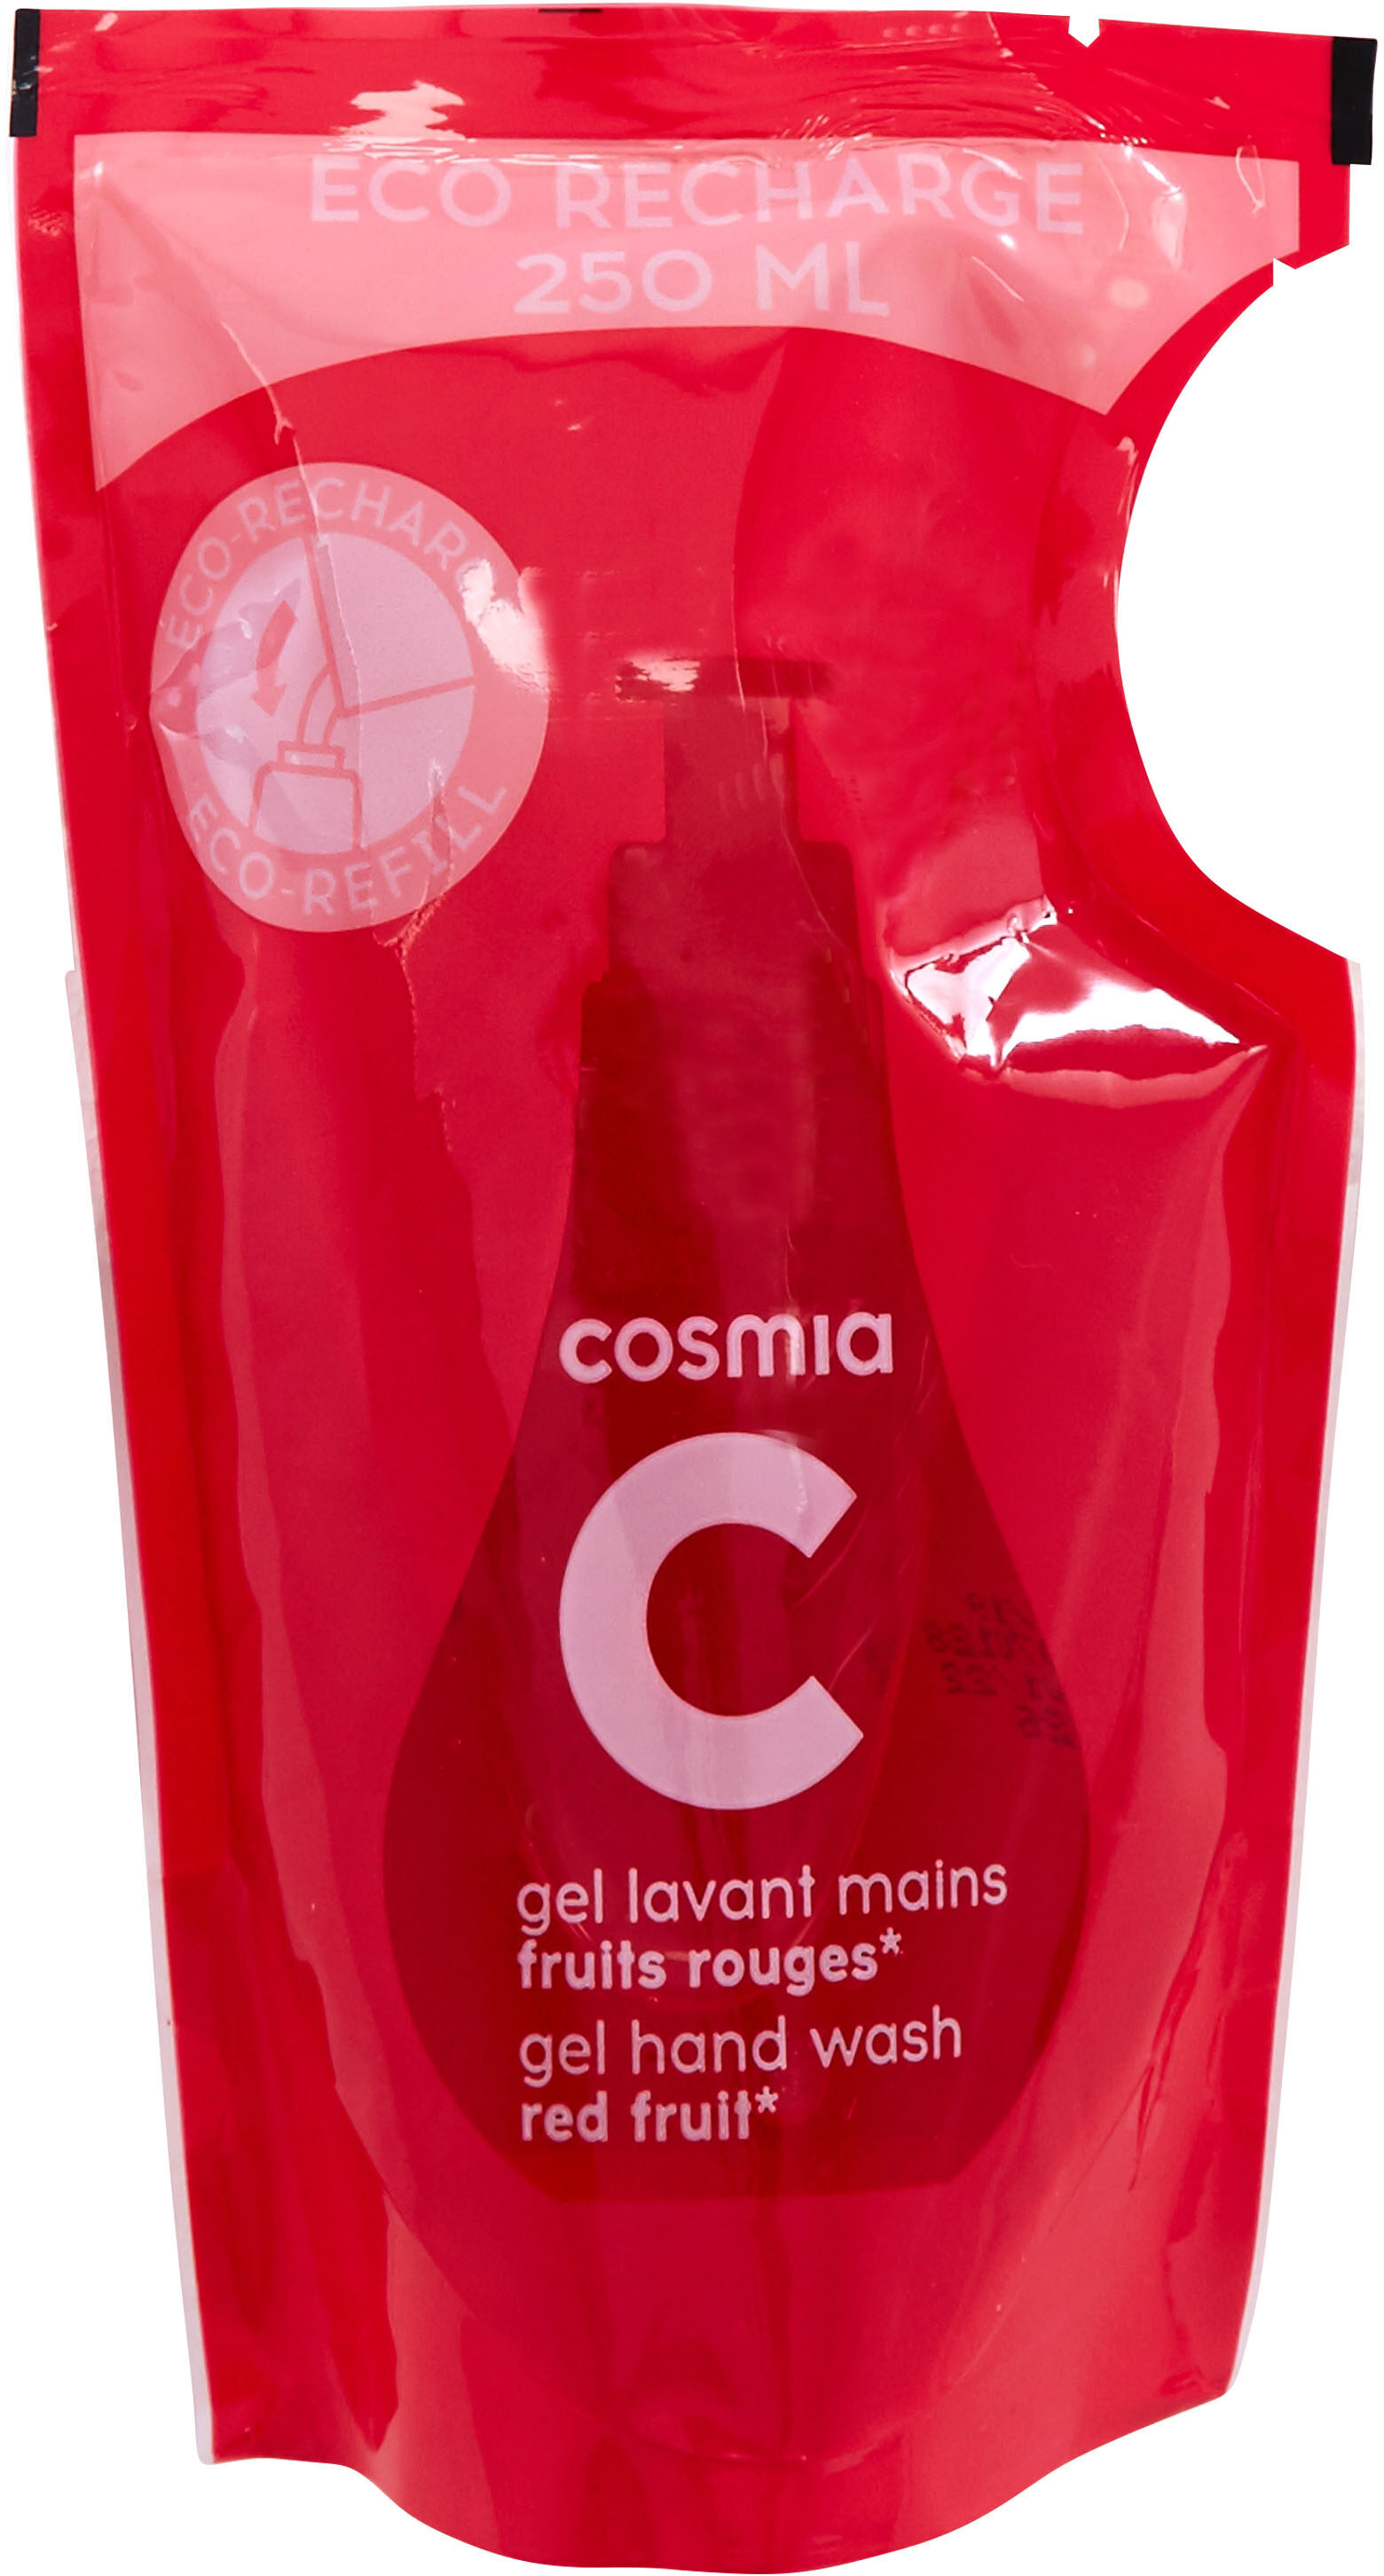 Cosmia - éco-recharge gel lavant mains - parfum fruits rouges* - tous types de peaux - 250ml - Produkt - fr